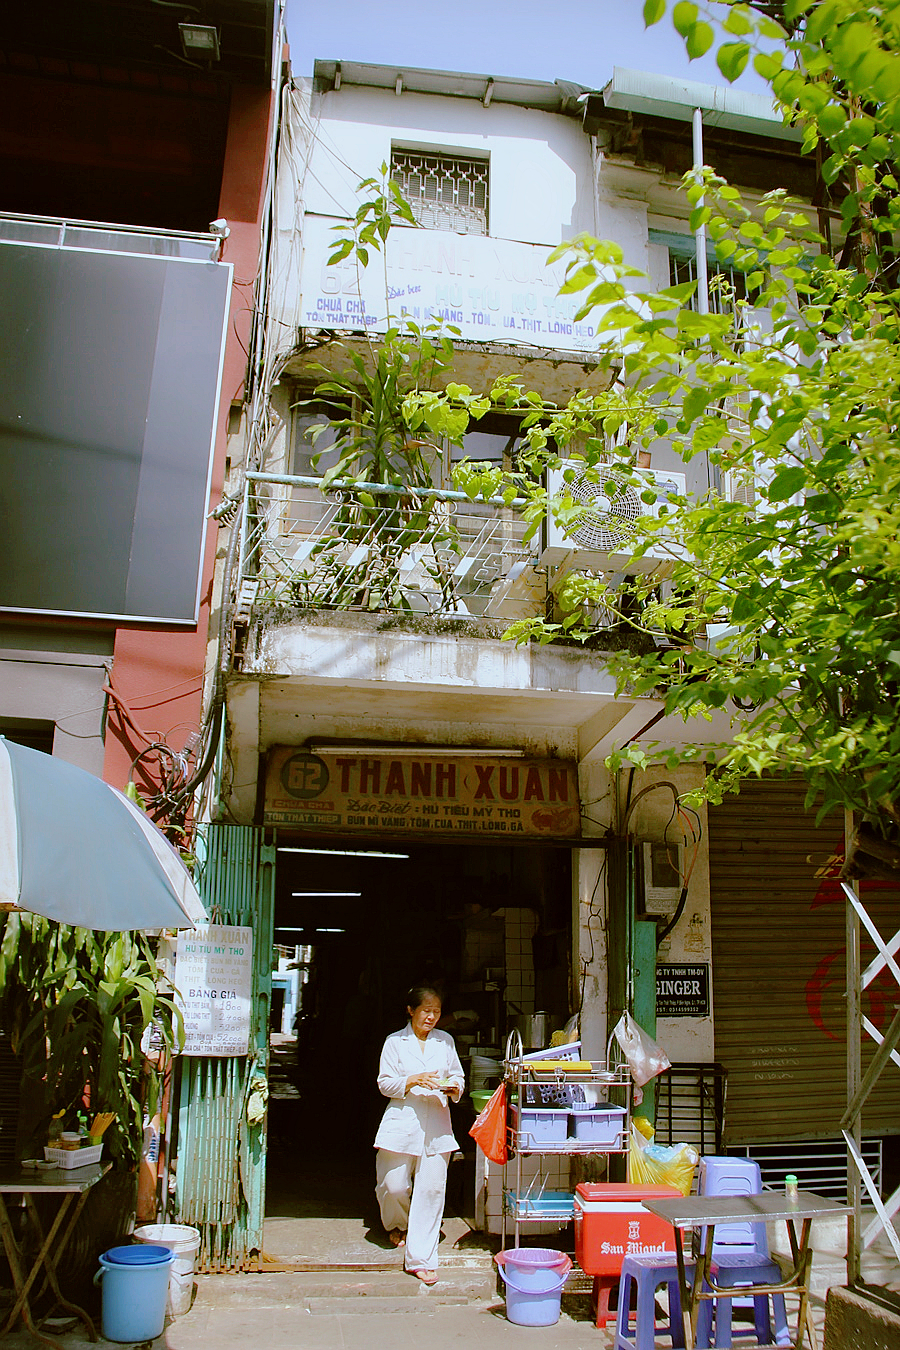 Hủ tiếu Sài Gòn: Không thể bỏ qua món hủ tiếu truyền thống đặc trưng của thành phố Sài Gòn. Nơi đây với hương vị tuyệt vời, hấp dẫn đã trở thành địa điểm thu hút du khách và người dân địa phương. Hãy đến thưởng thức món ăn đặc biệt này tại nhà hàng uy tín và đảm bảo vệ sinh.